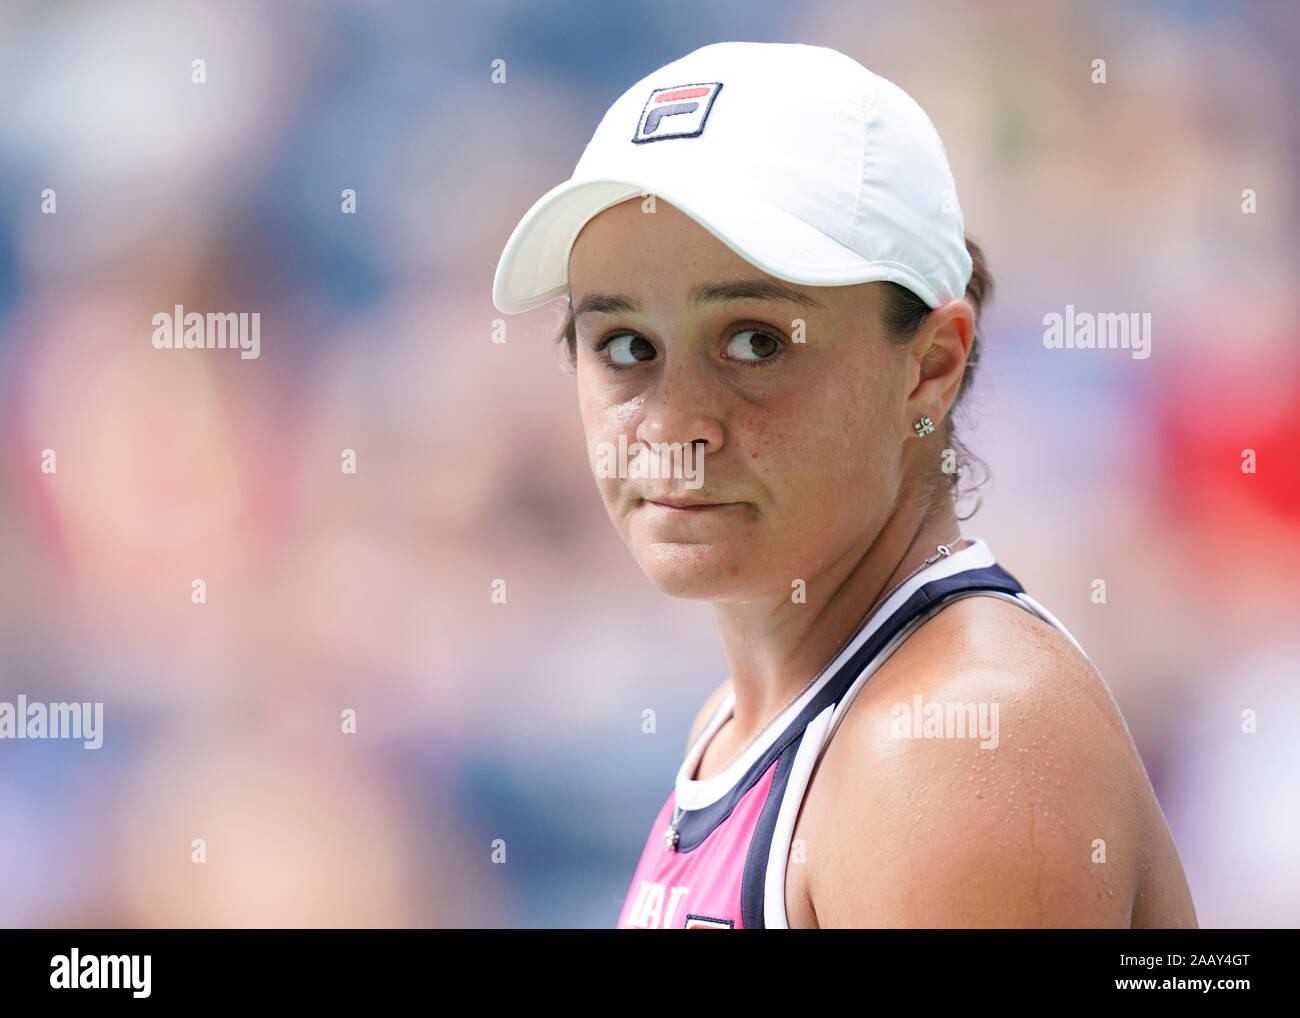 Close-up portrait de joueur de tennis australien Ashleigh Barty pendant le tournoi de tennis de l'US Open, New York City, New York State, USA Banque D'Images